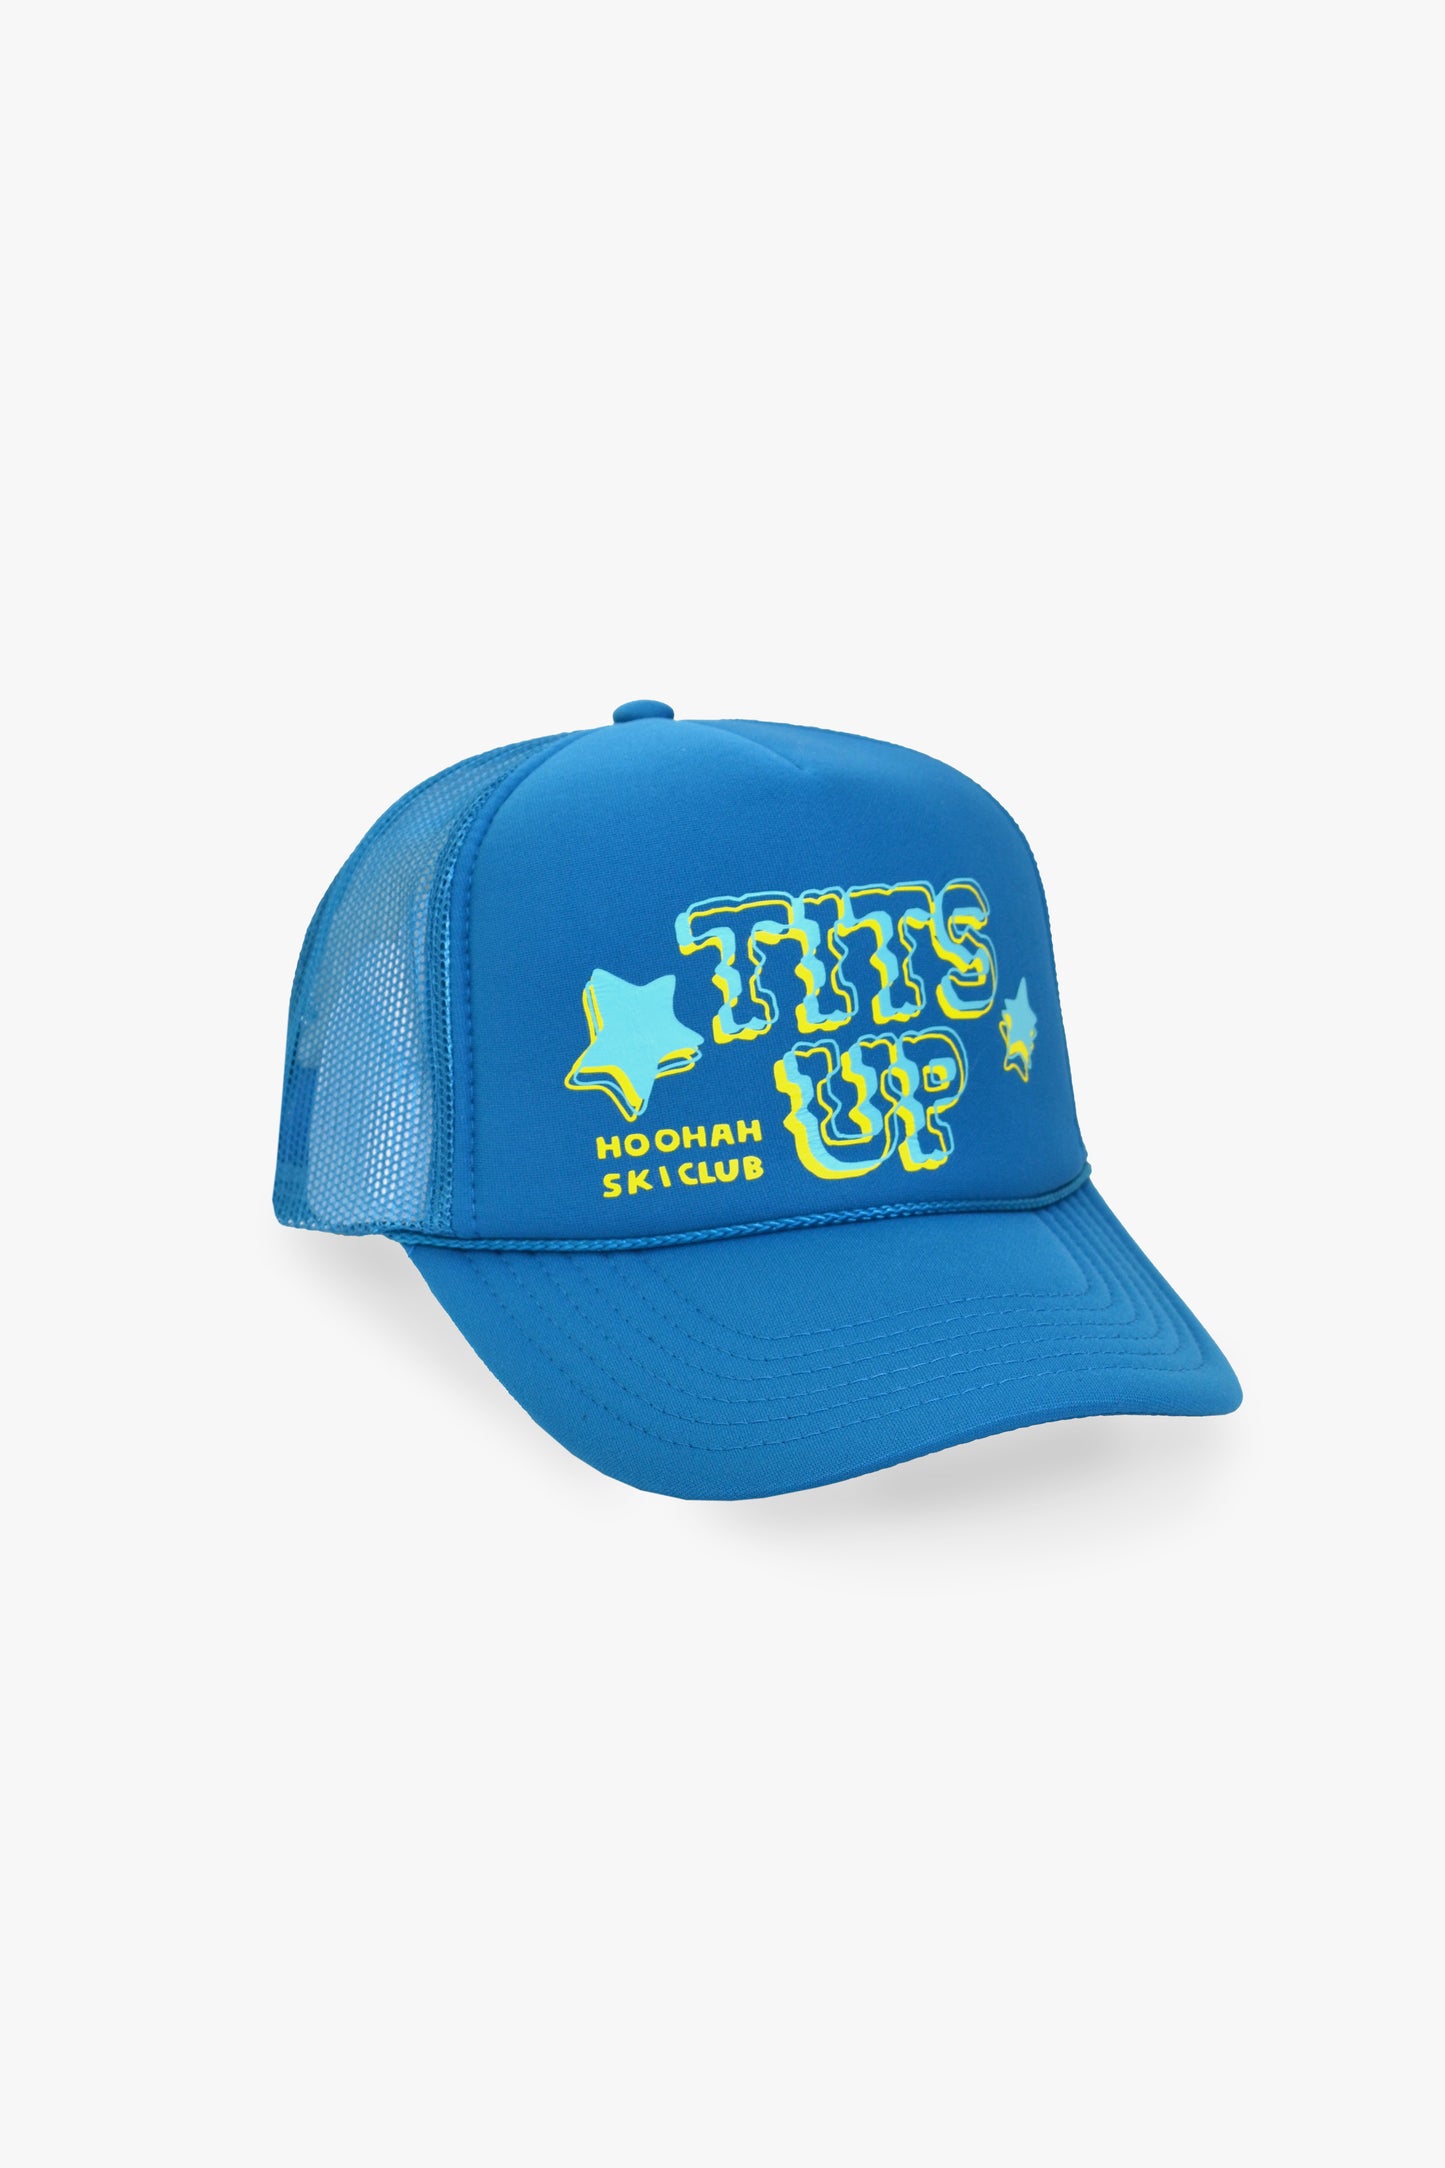 Tits Up Trucker Hat